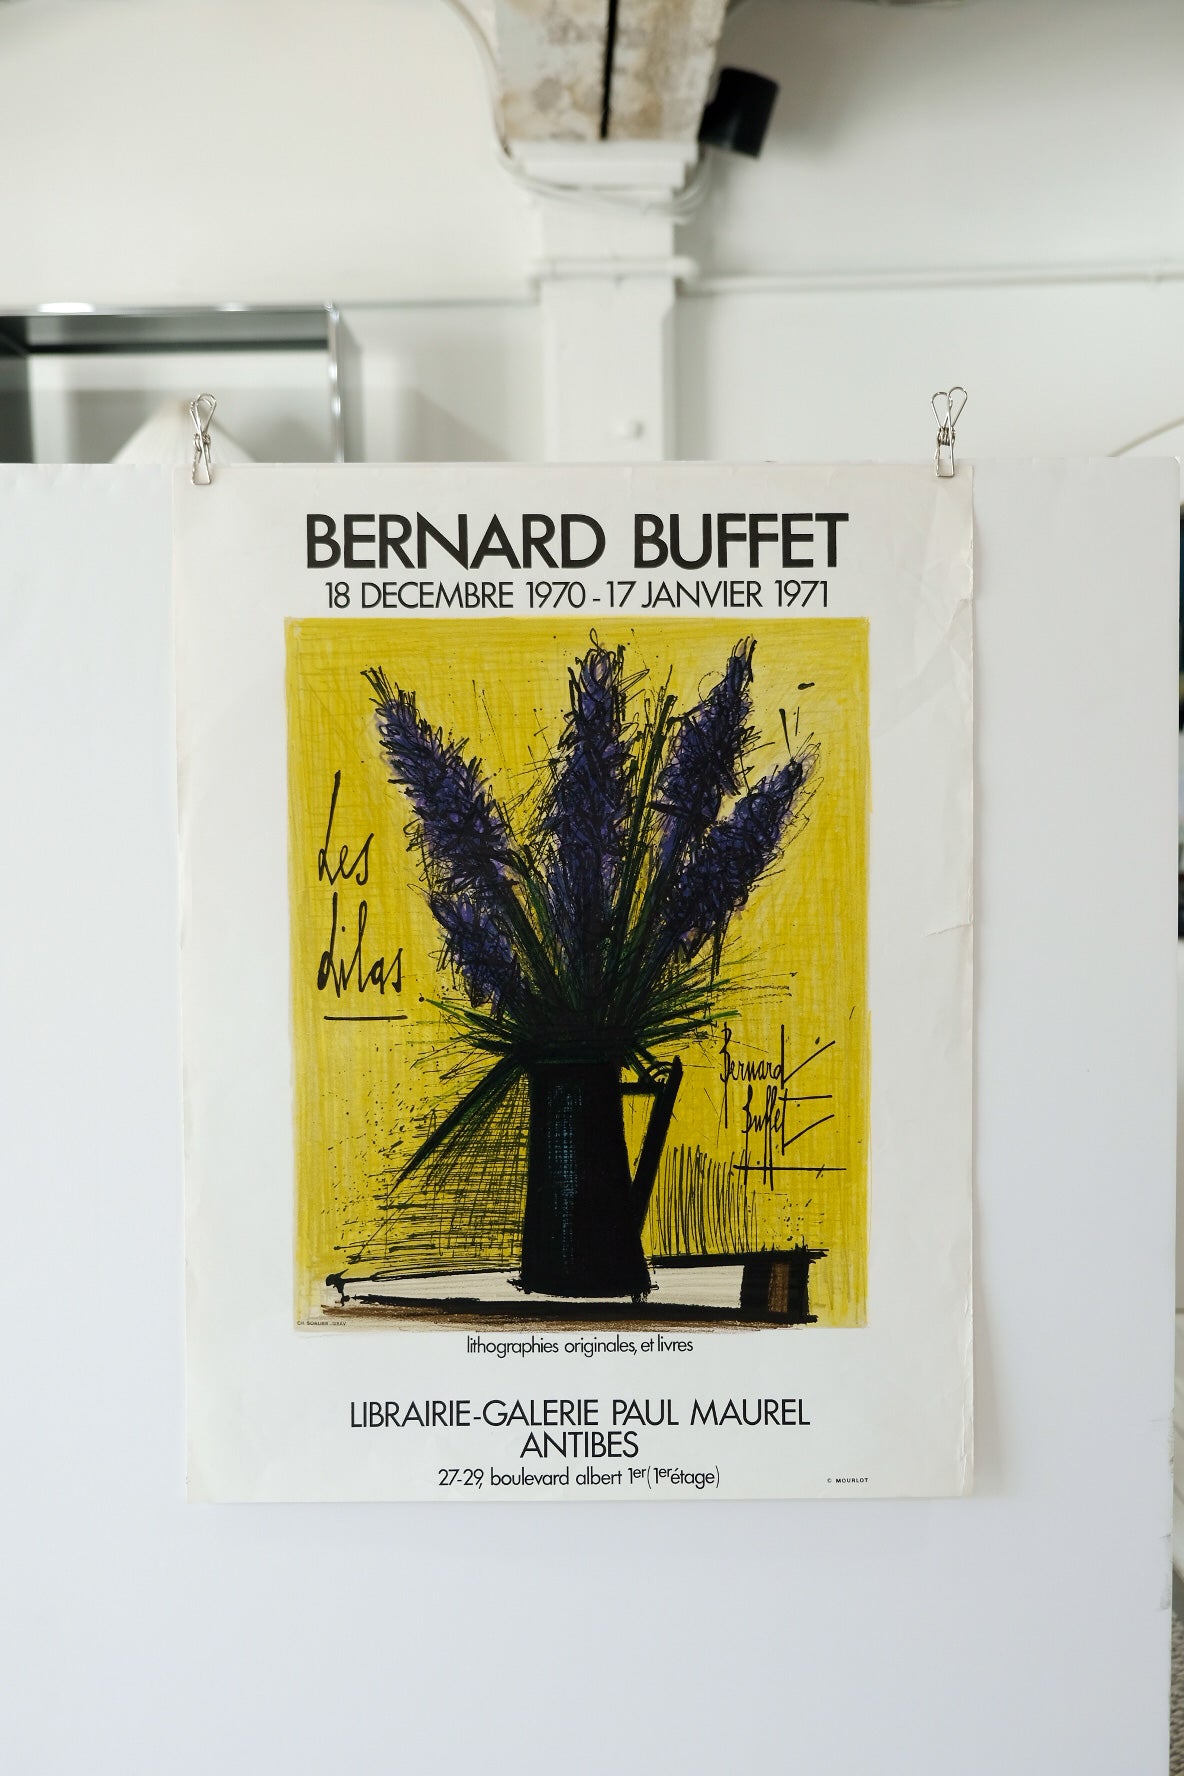 Bernard Buffet Les Lilas Mourlot Print